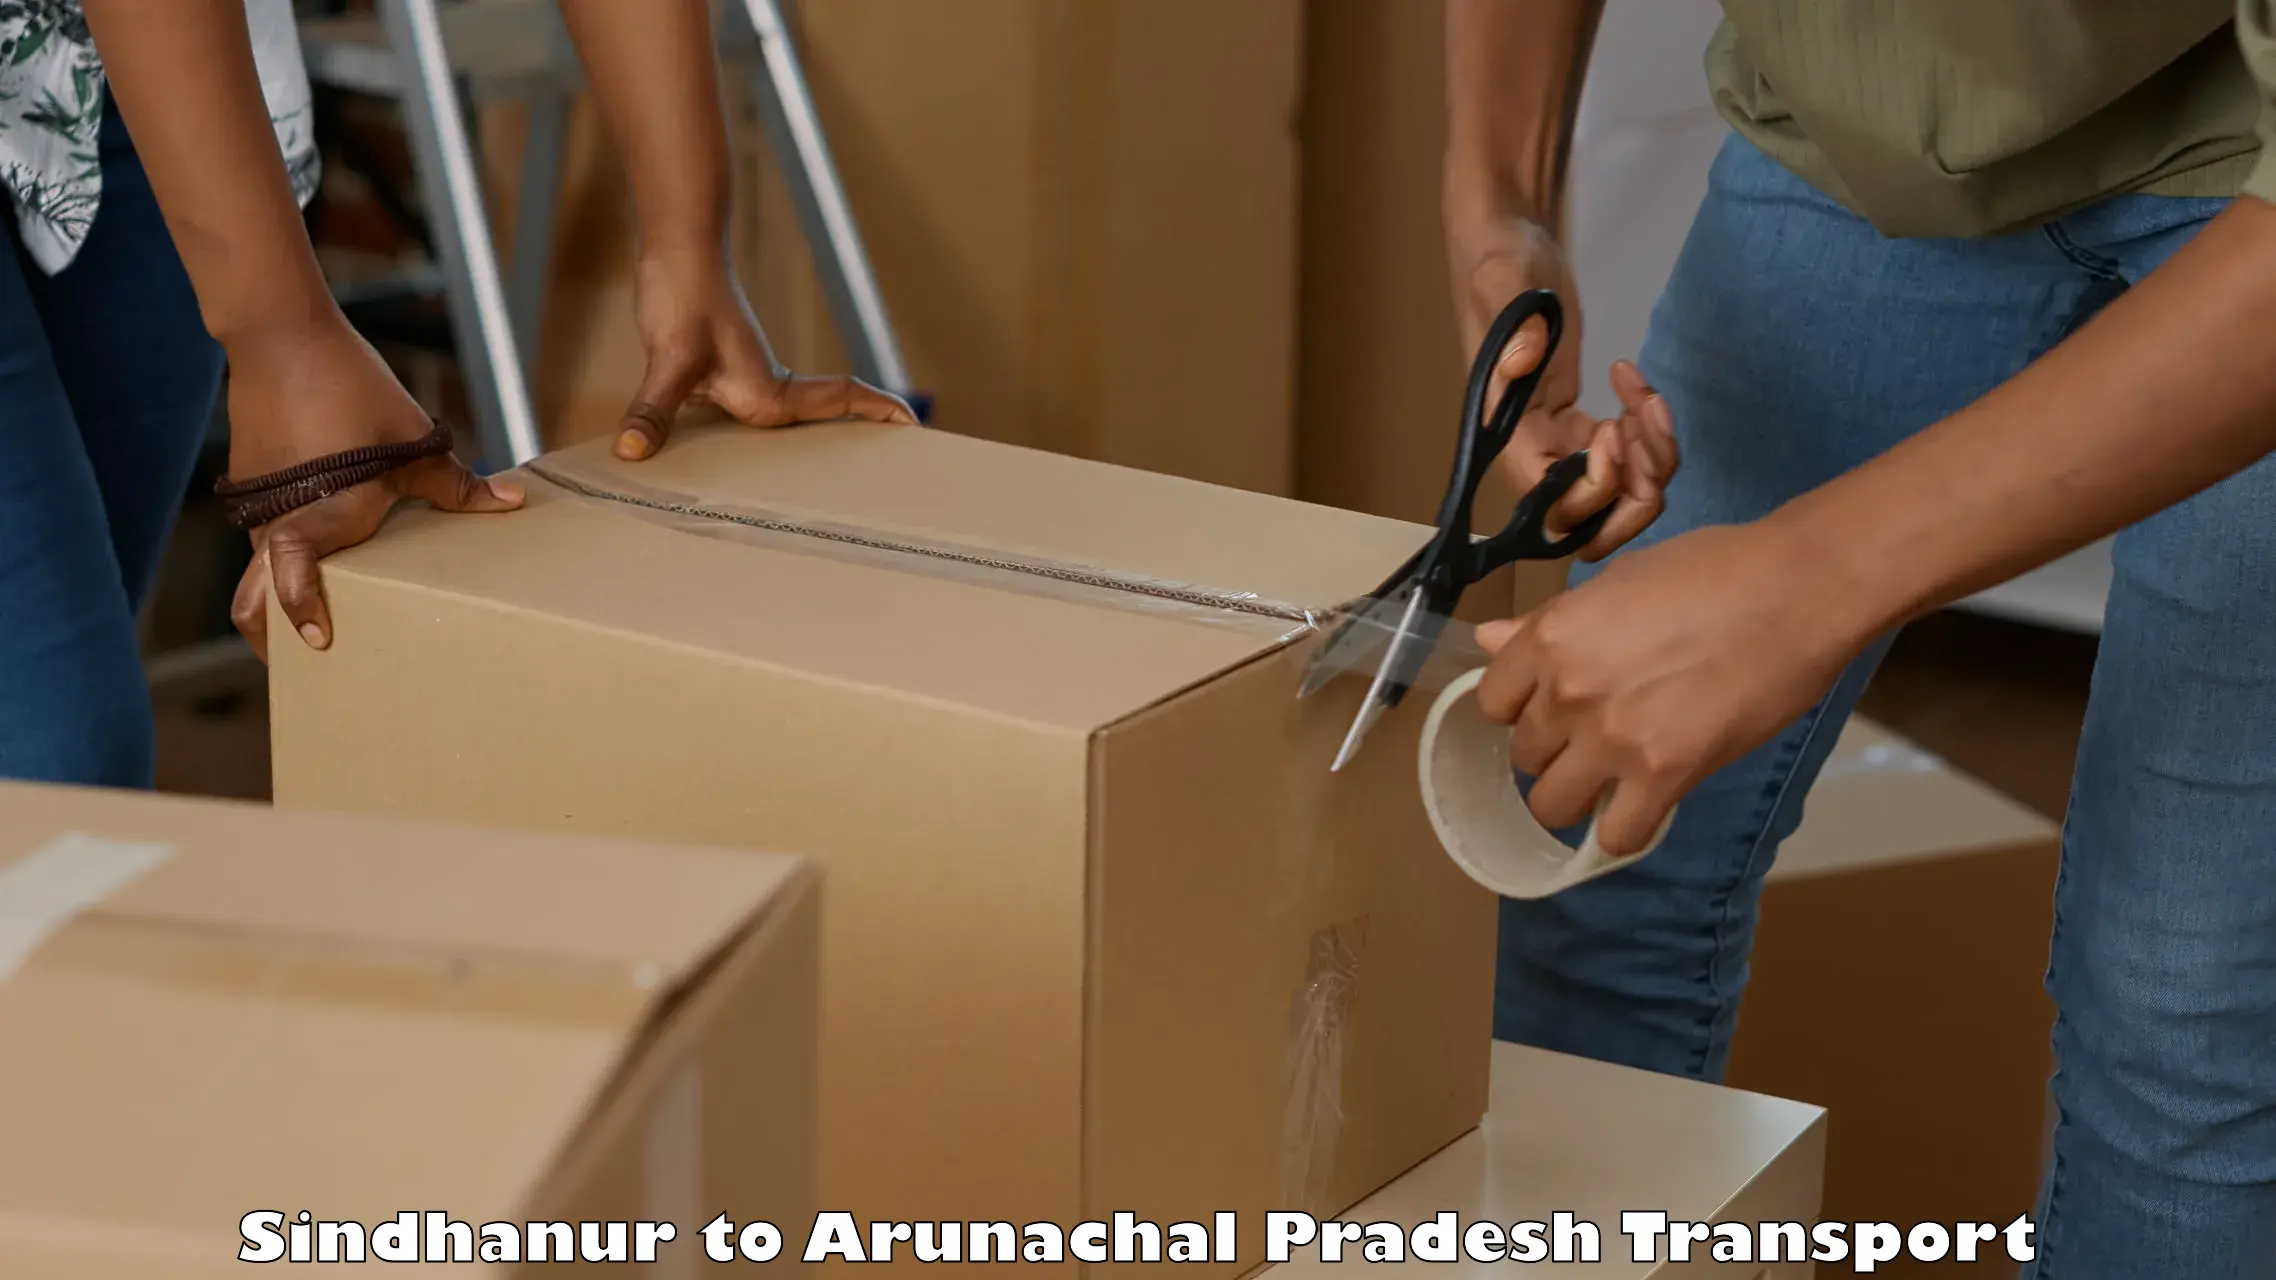 Online transport service Sindhanur to Arunachal Pradesh